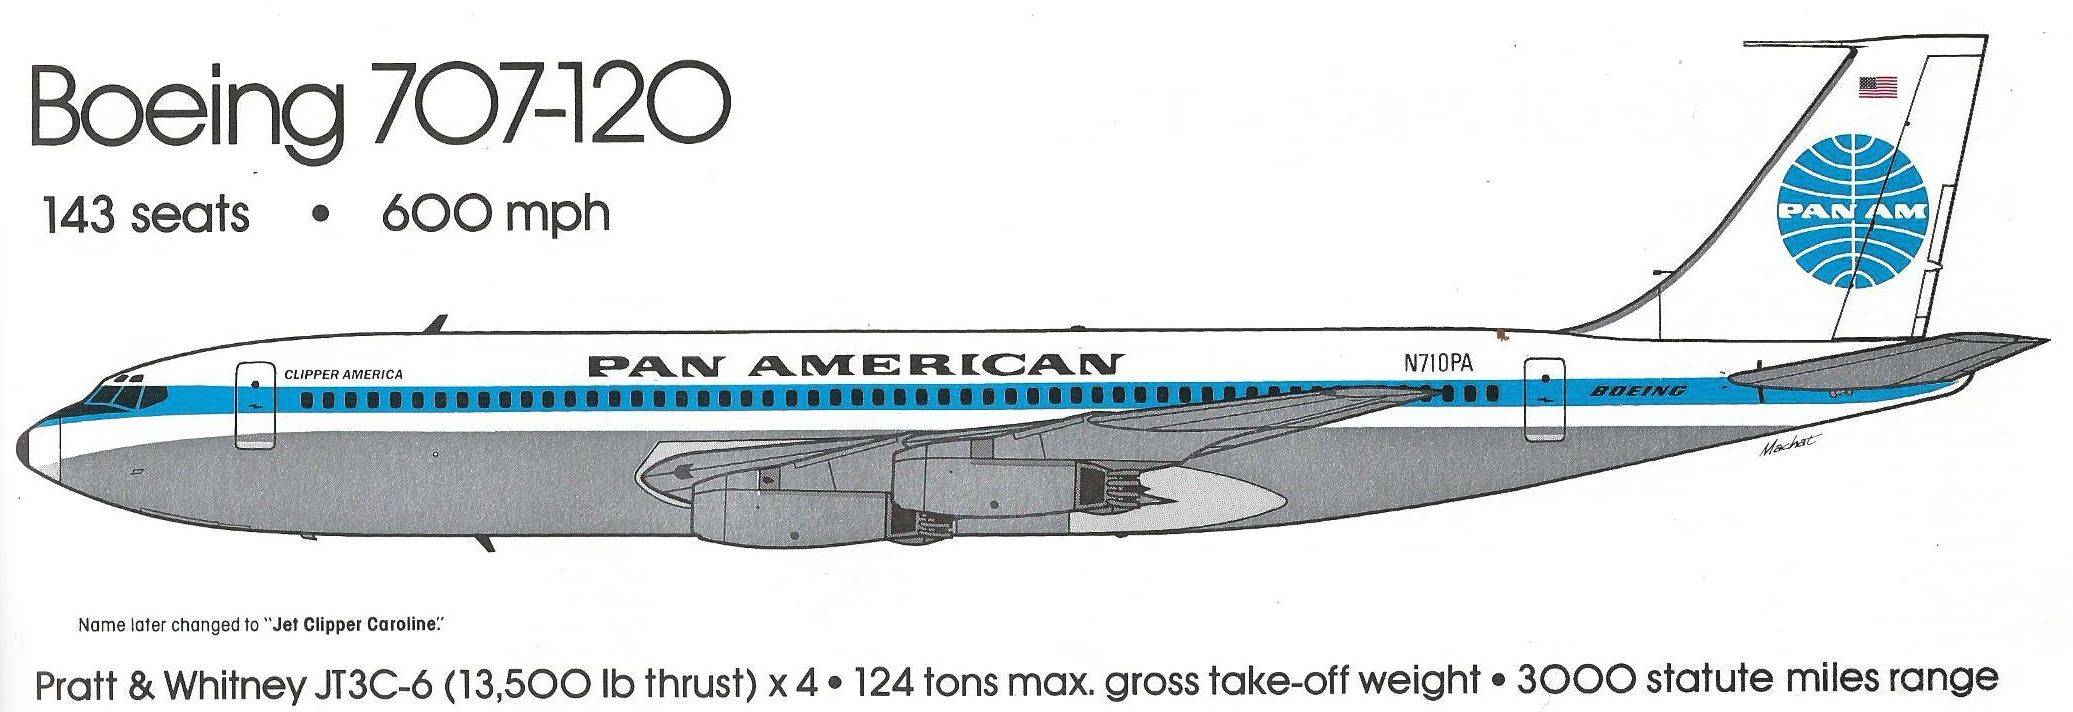 Boeing 707 -дальнемагистральный пассажирский самолет основной конкуерент douglas dc-8 от боинг. характеристики.